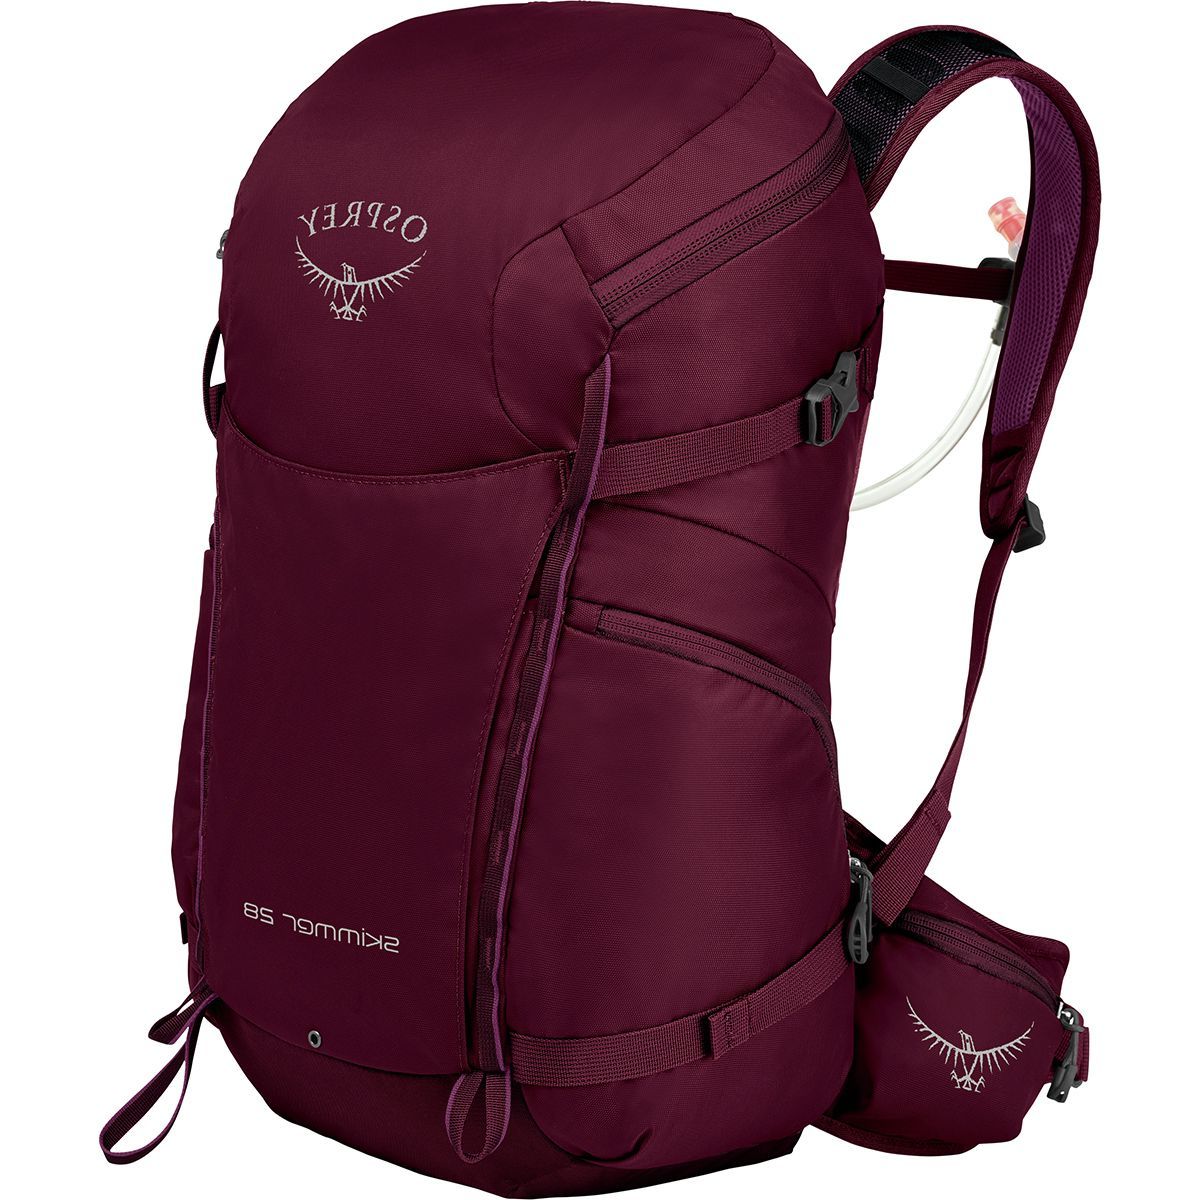 Osprey Packs Skimmer 28L Backpack - Women's